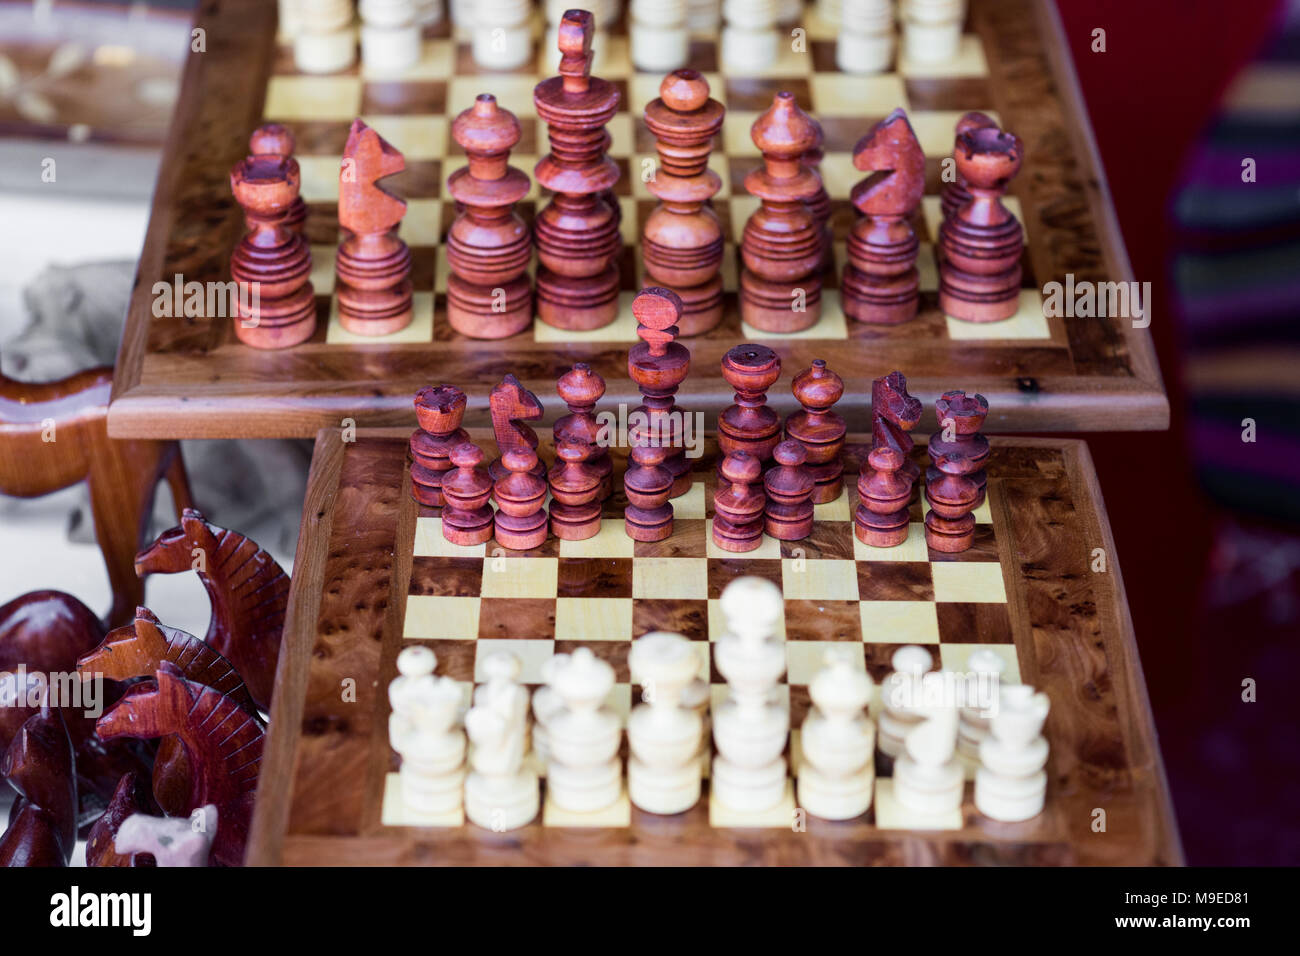 Holz- Schachbrett Spiel mit arrangiert Holz- Schachfiguren bereit für die Wiedergabe Stockfoto